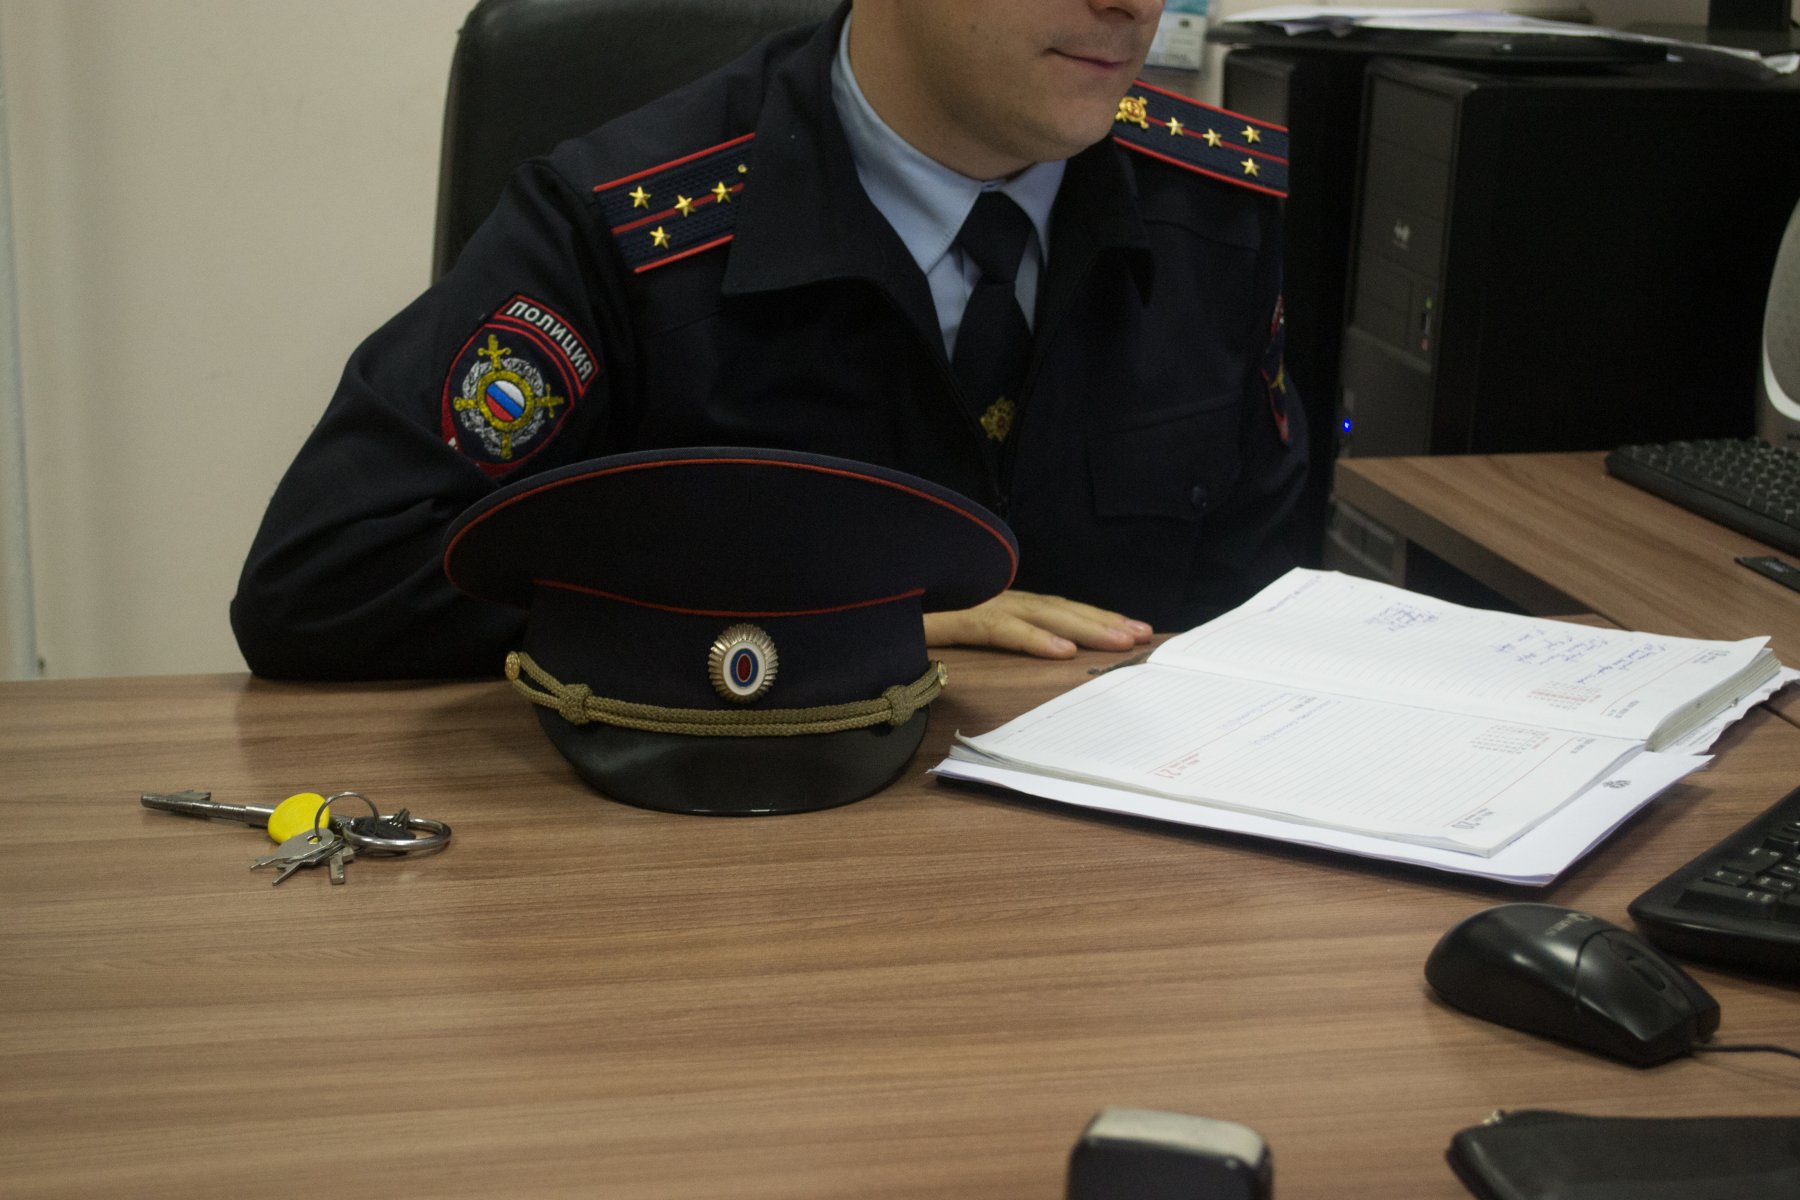 Жителя Коломны оштрафовали за дискредитацию Вооруженных сил РФ